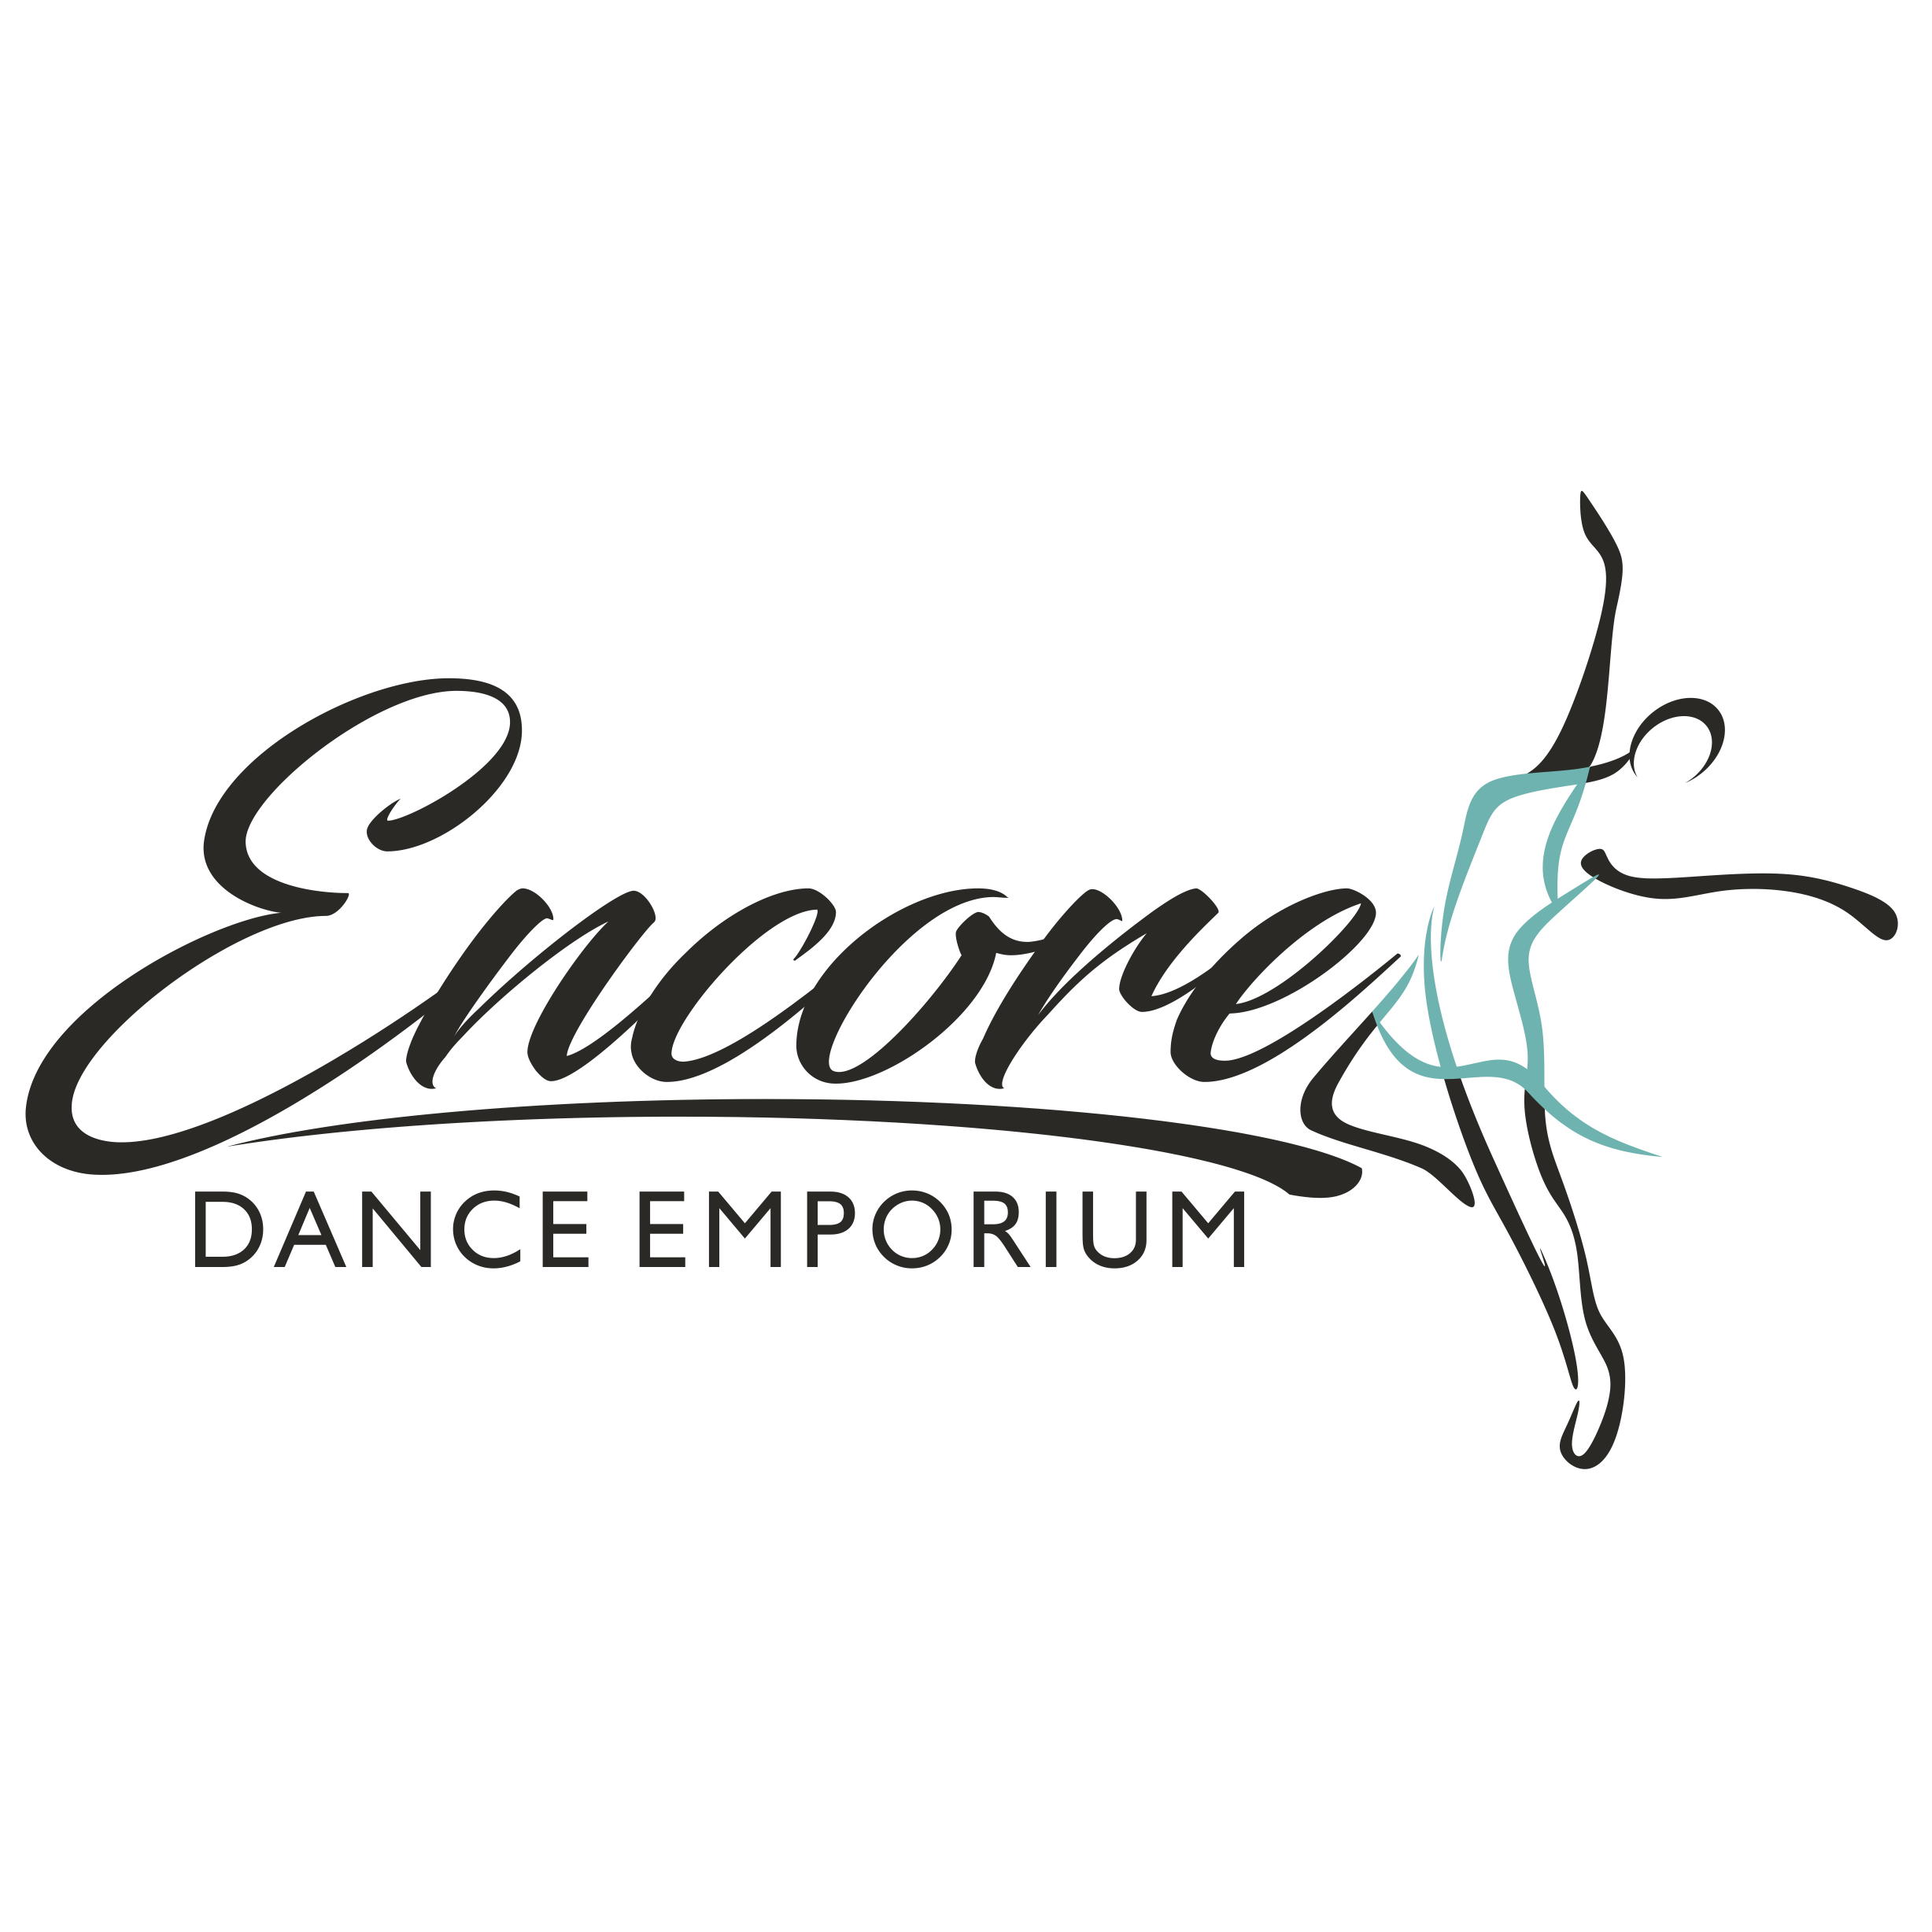 Encore Dance Emporium - Loveland, CO 80537 - (970)691-0091 | ShowMeLocal.com